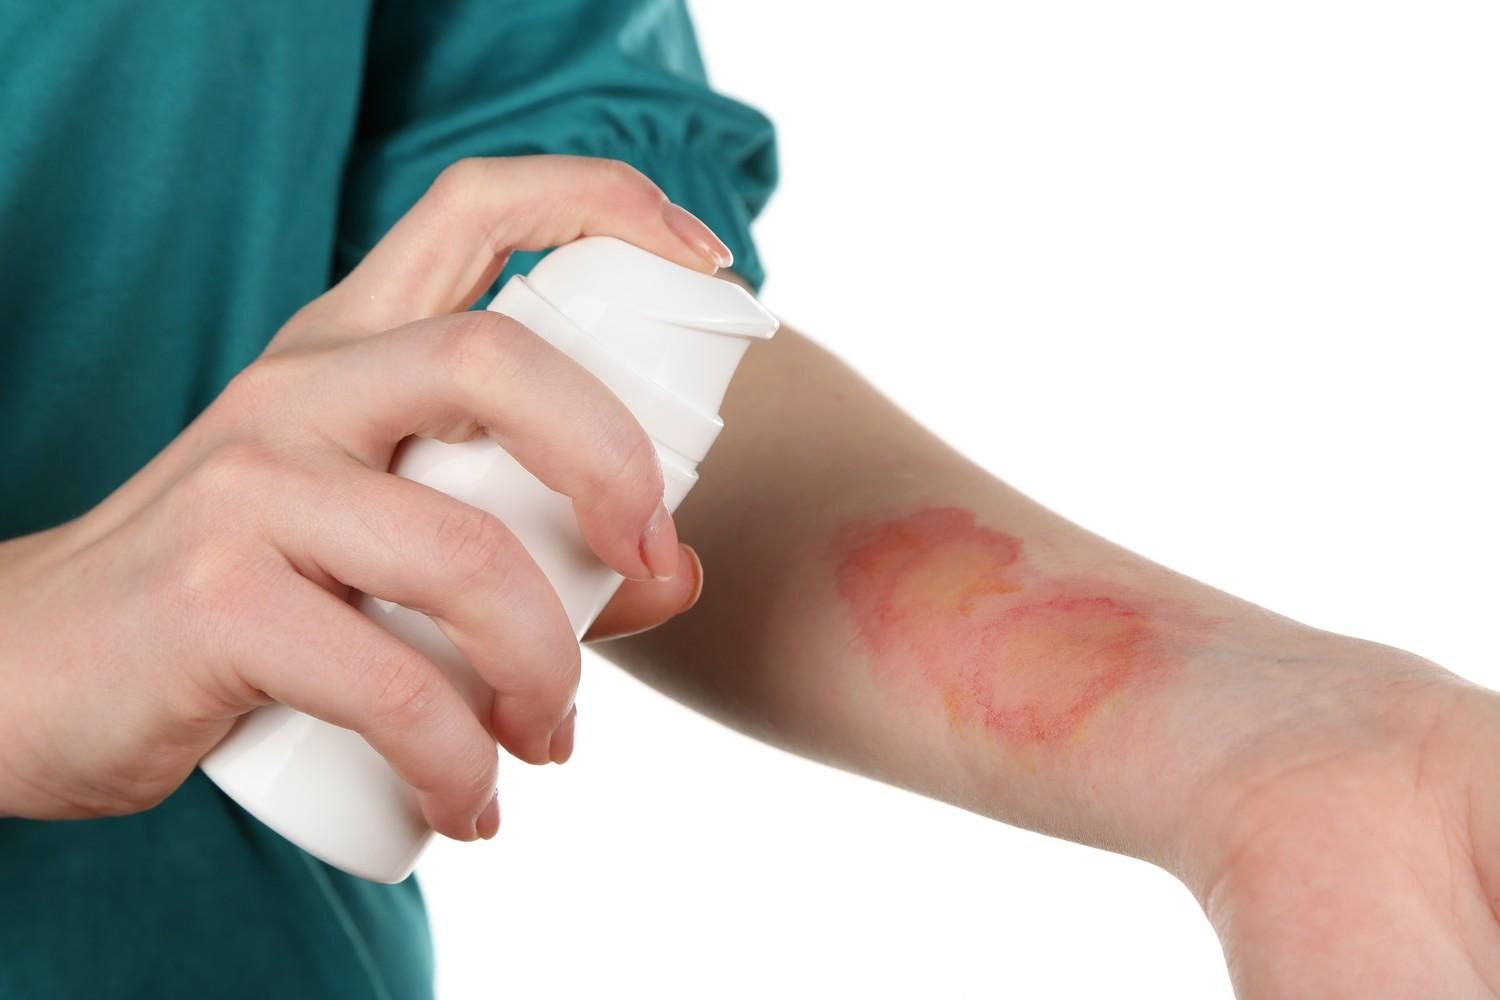 Распространенное заболевание кожи связано с возникновением рака